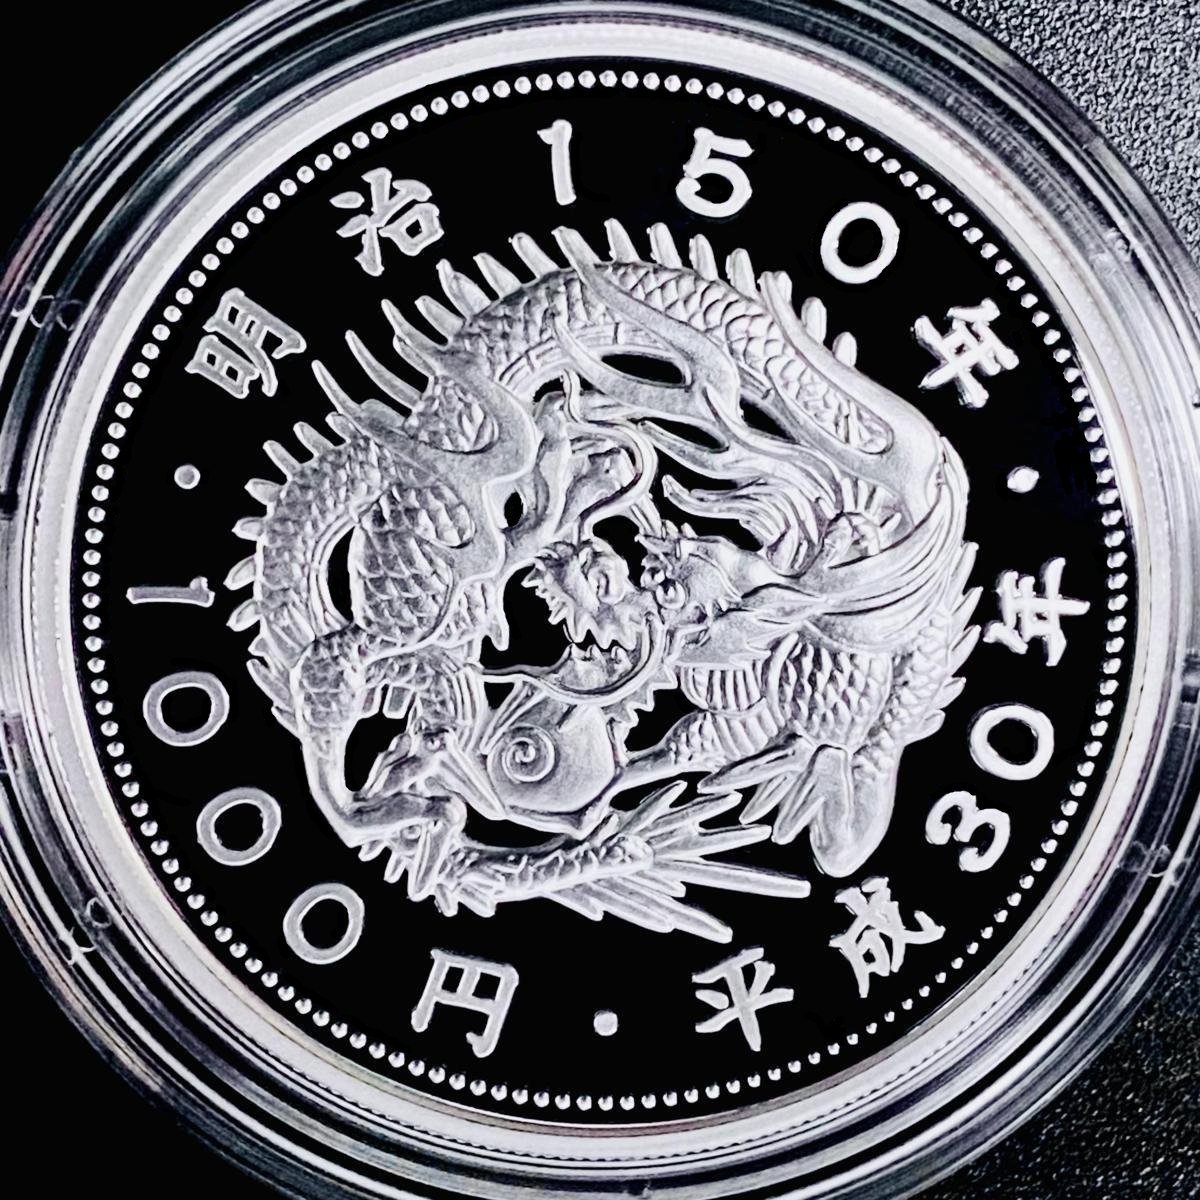 1円~ 明治150年記念 千円銀貨幣プルーフ貨幣セット 31.1g 2018年 平成 